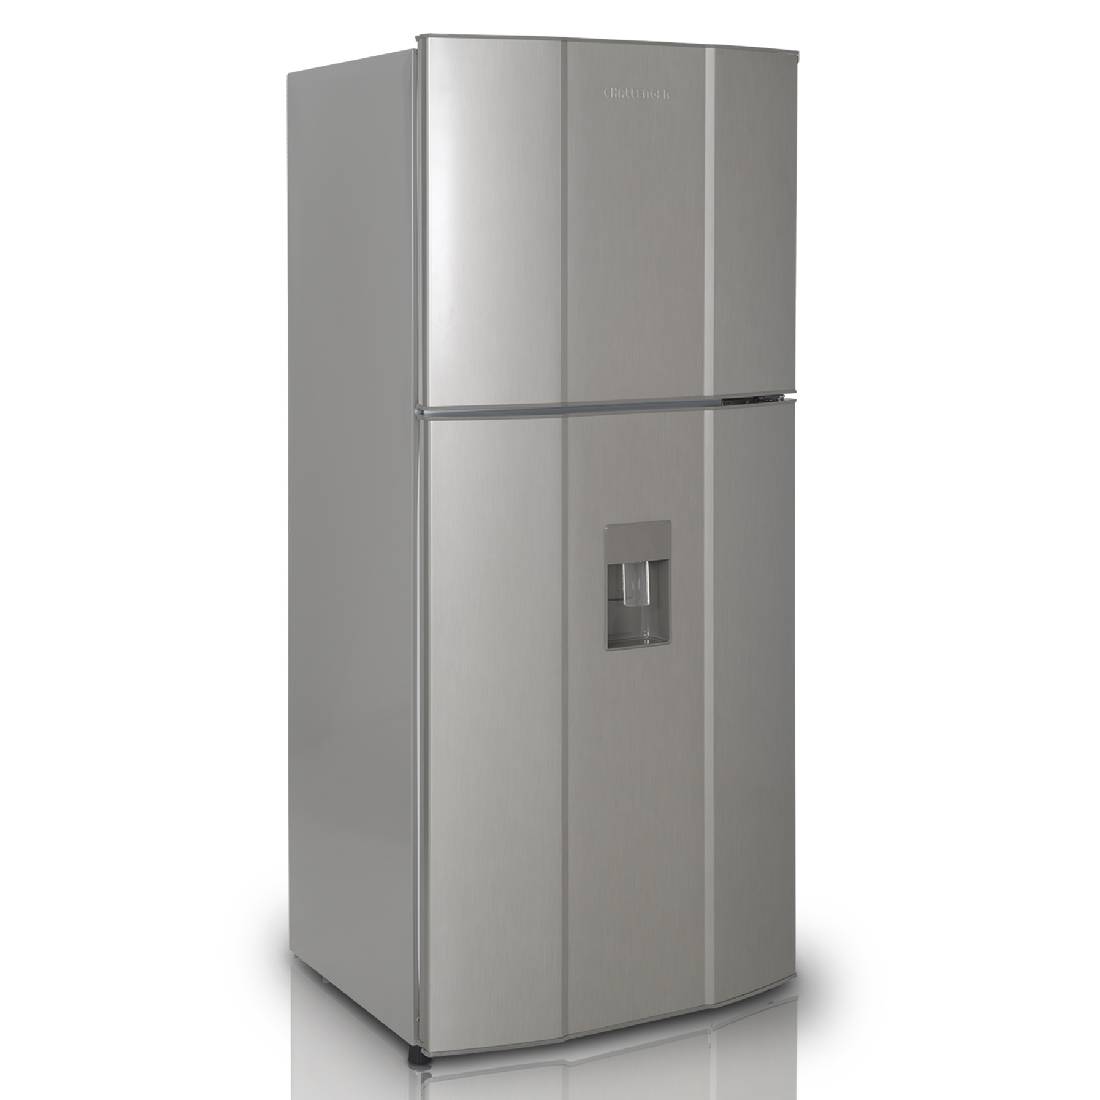 Refrigeradora CHALLENGER CR428 No Frost Gris sin Acrílico 370 Litros